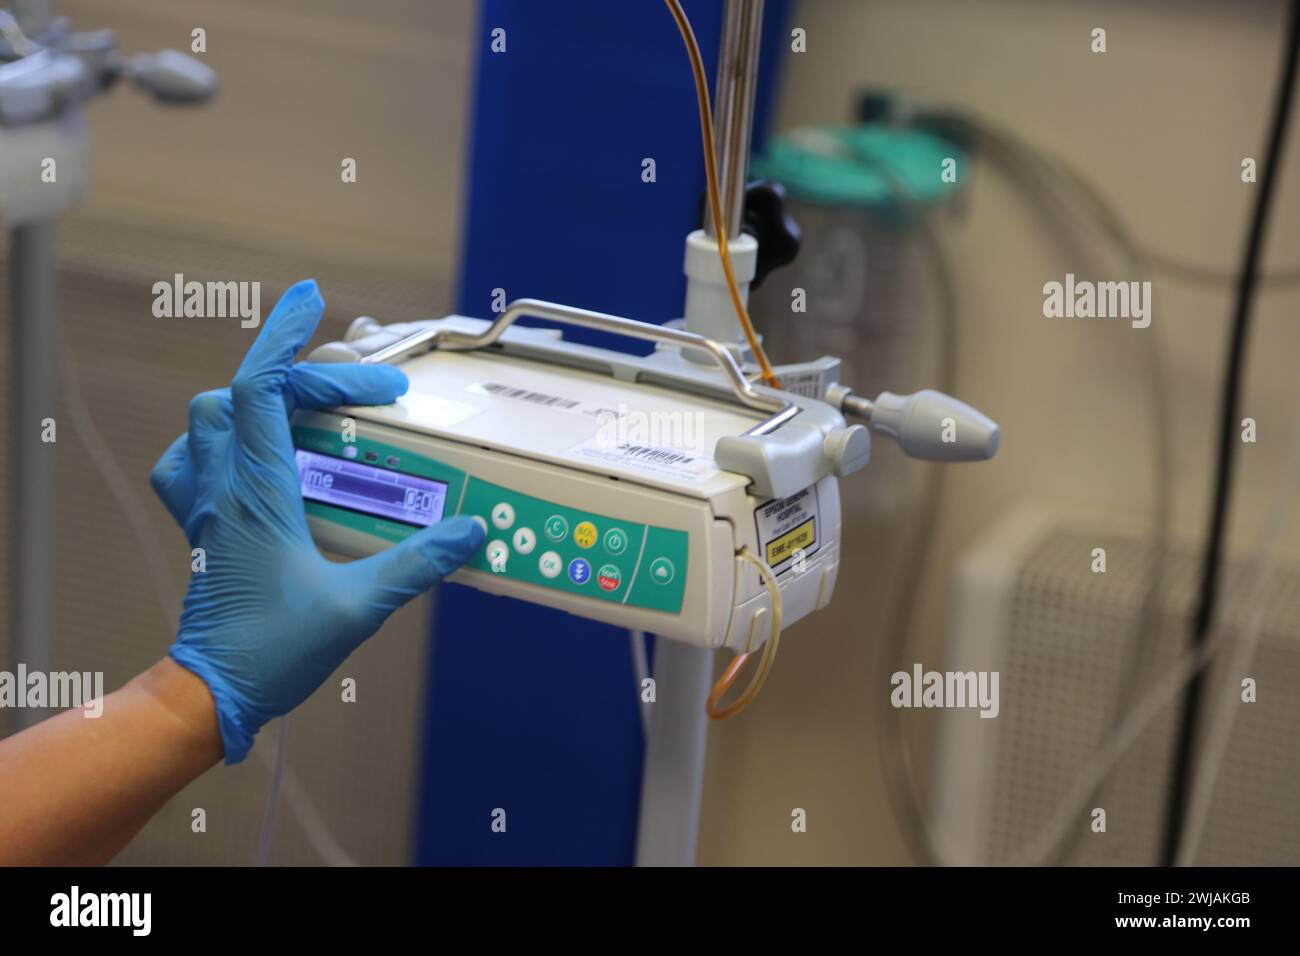 Infirmière préparant le système de pompe à perfusion volumétrique Infusomat Space prêt pour une perfusion de fer sur un patient à l'hôpital Surrey Angleterre Banque D'Images